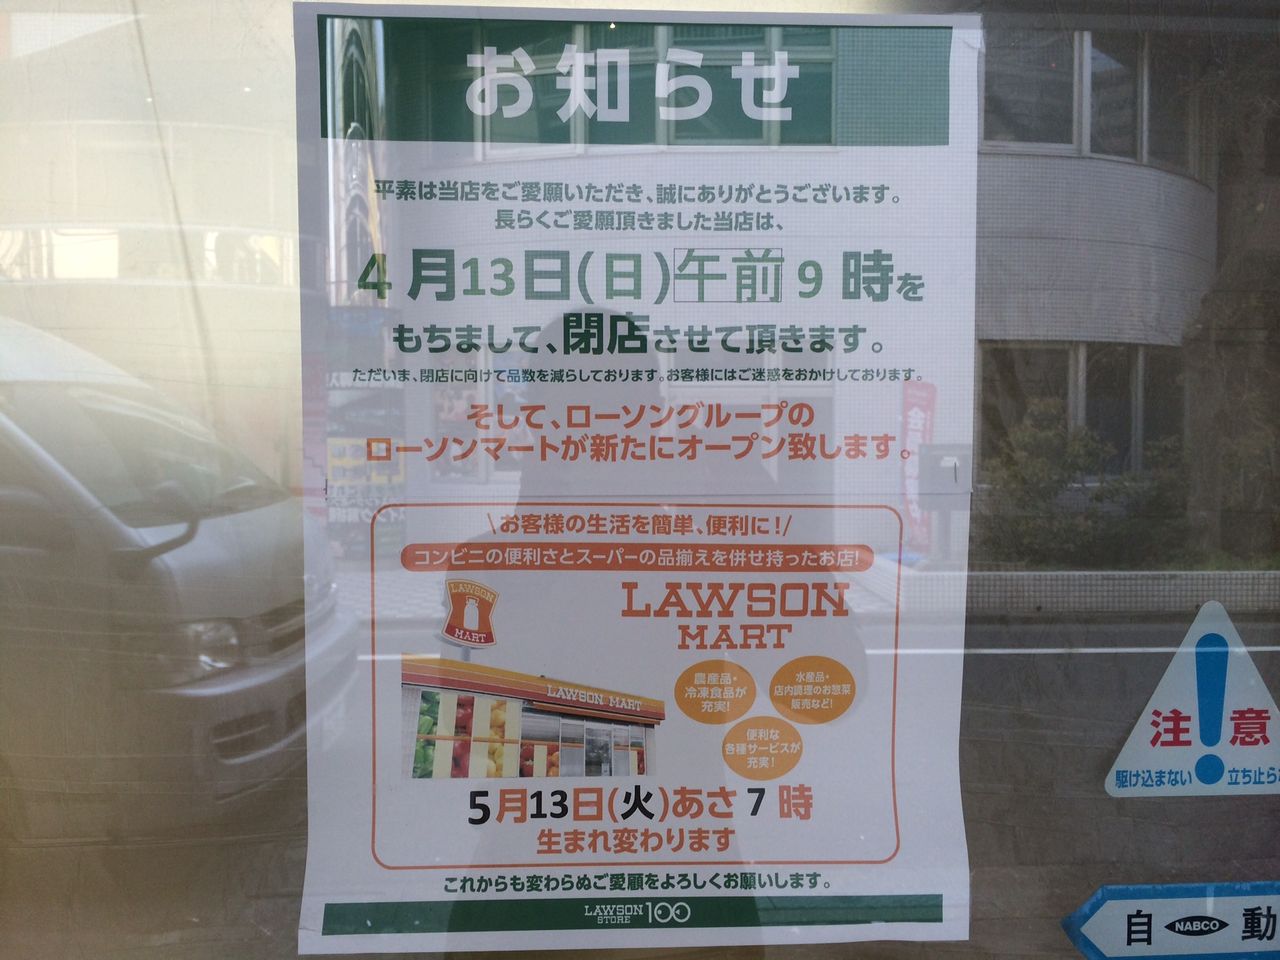 ローソンマート Lawson S New Type Of Business せいしんパンダ Panda In Seishin Cho